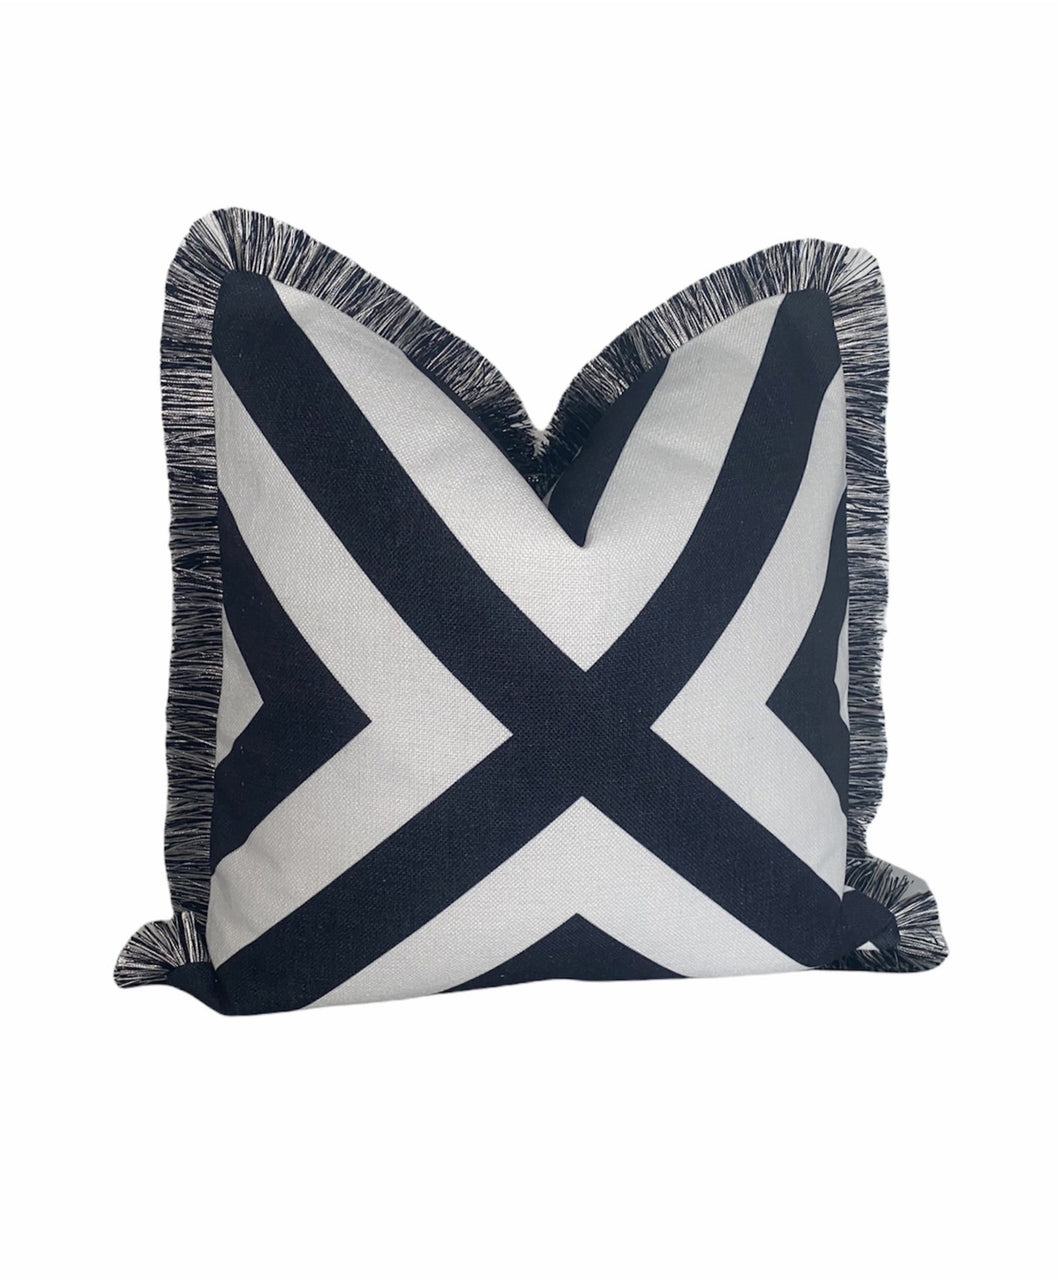 Géométrique Noir et Blanc Croix X Monochrome Chevron Zigzag Fringe Cushion Cover Pillow Plain No Crystals